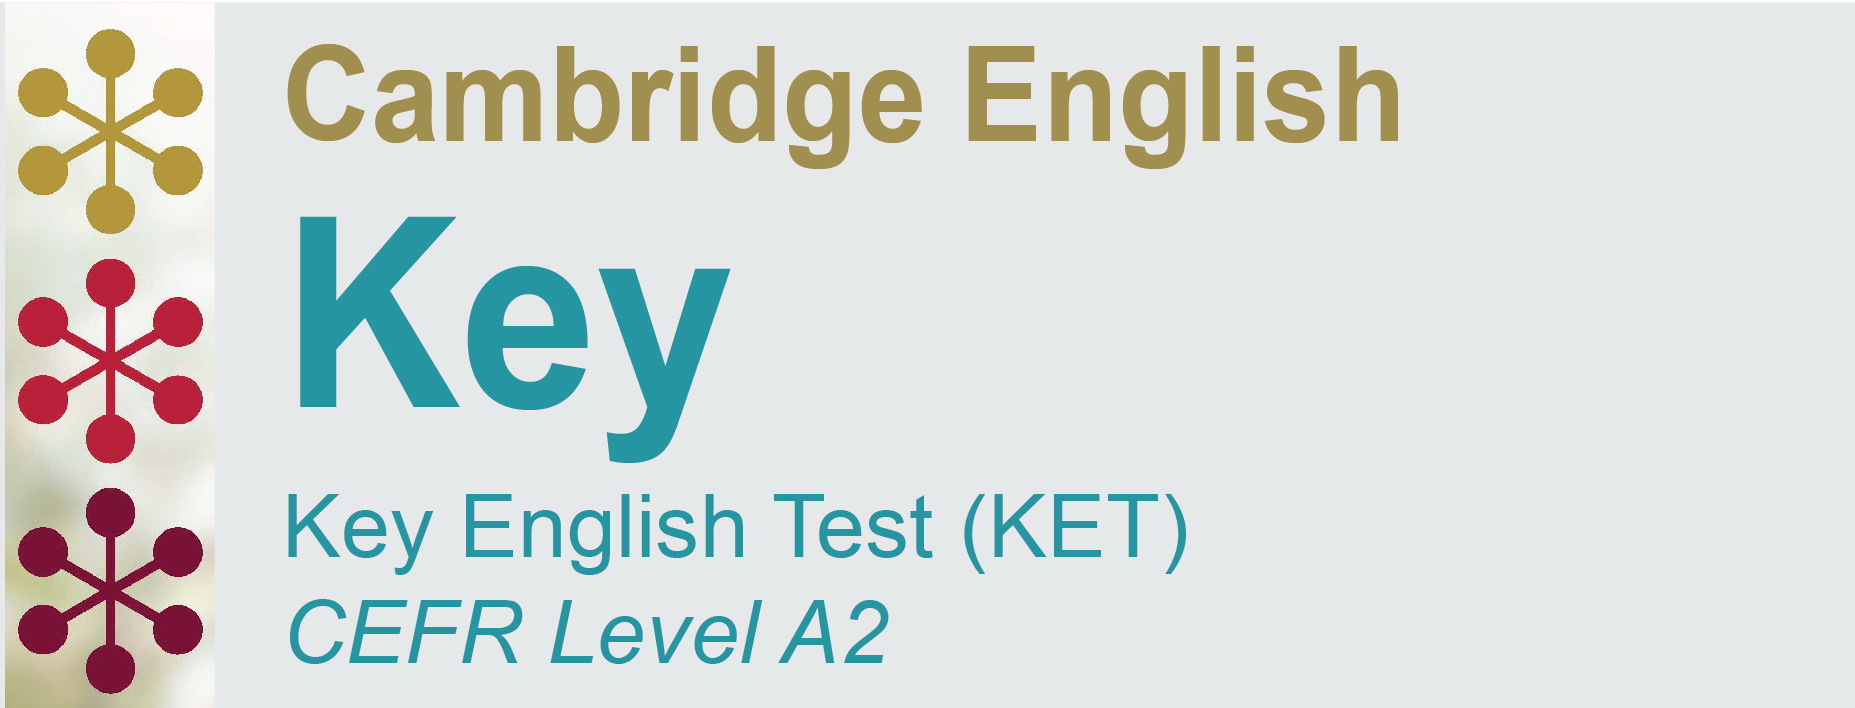 Международный английский тест. Экзамен ket. Cambridge Key English Test. Ket тест. Экзамен ket по английскому.